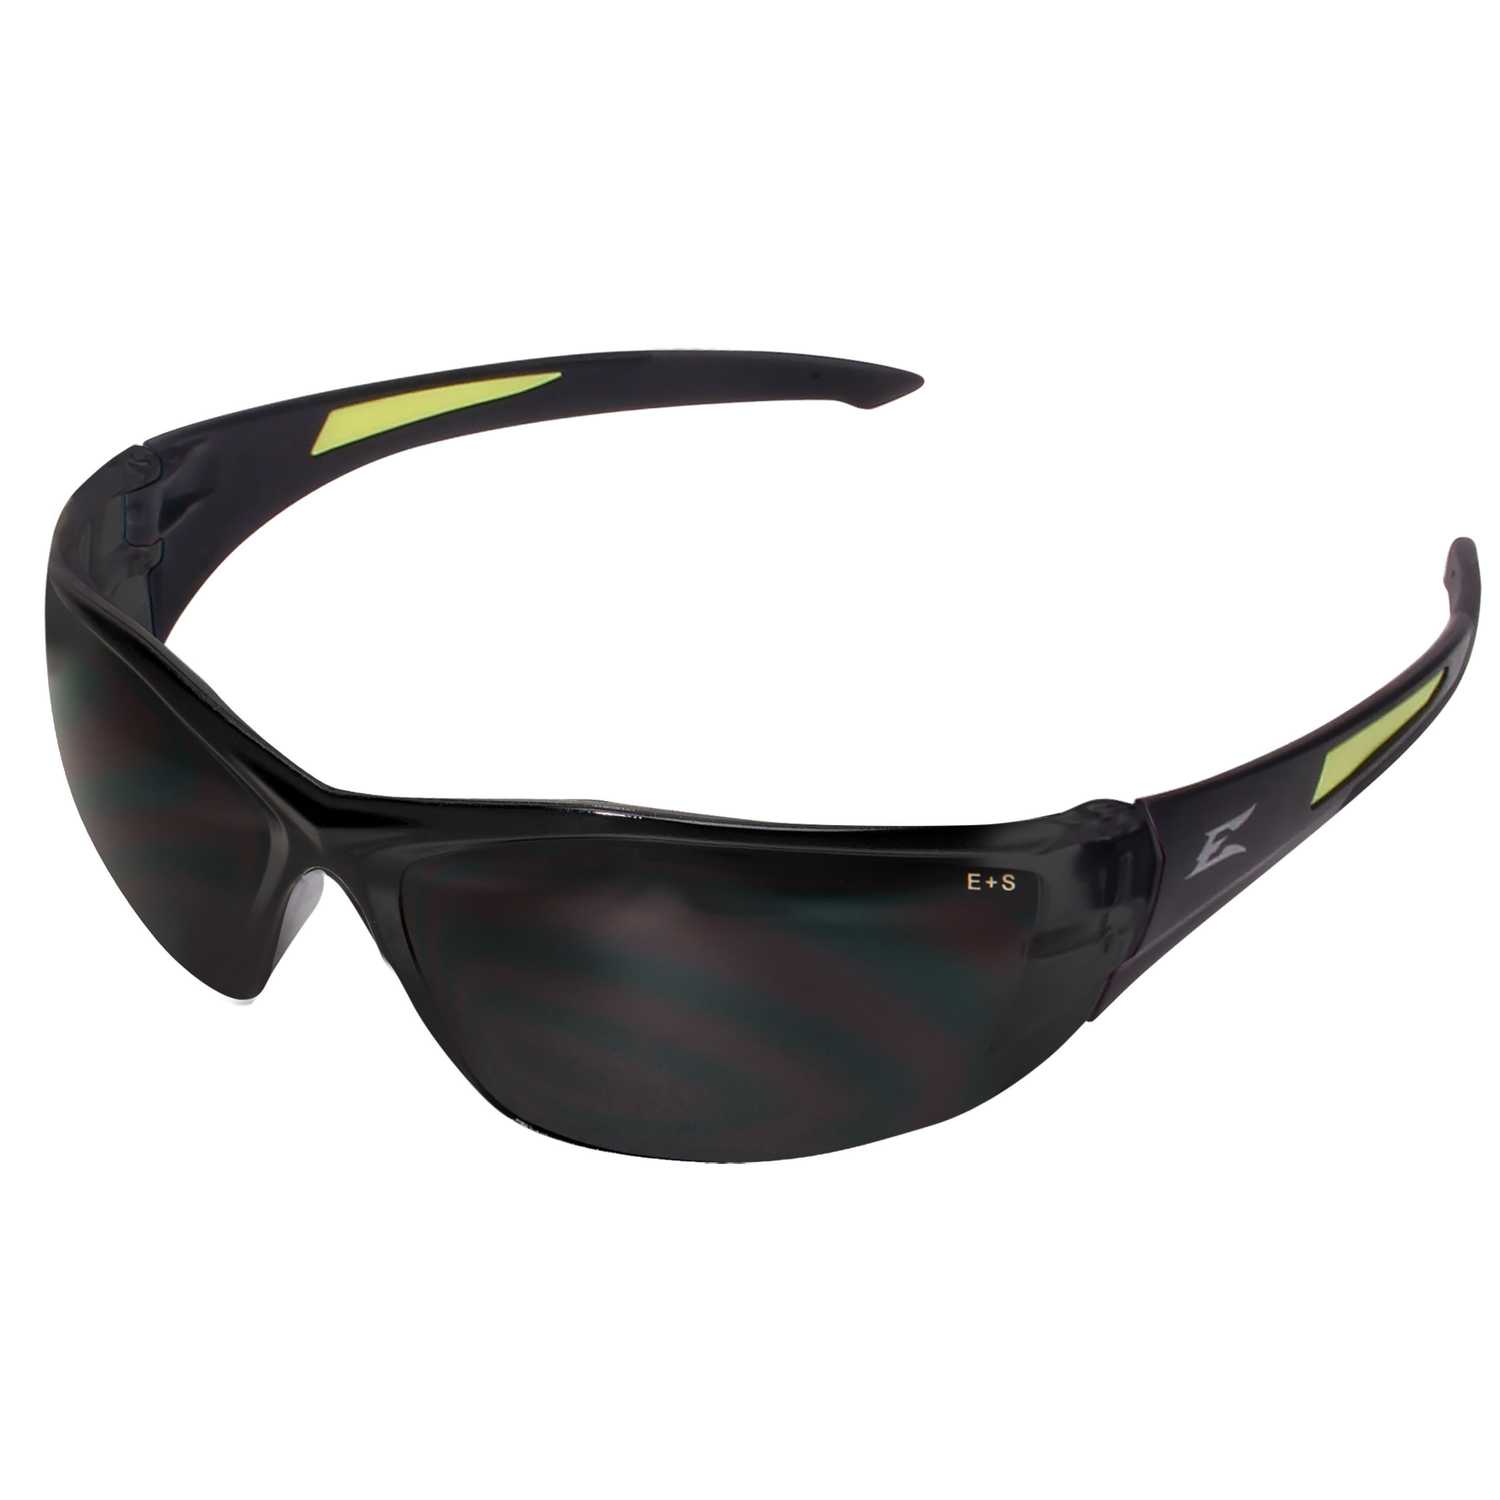 Edge Eyewear Safety Glasses Smoke Lens Black Frame 1 pc. Ace Hardware